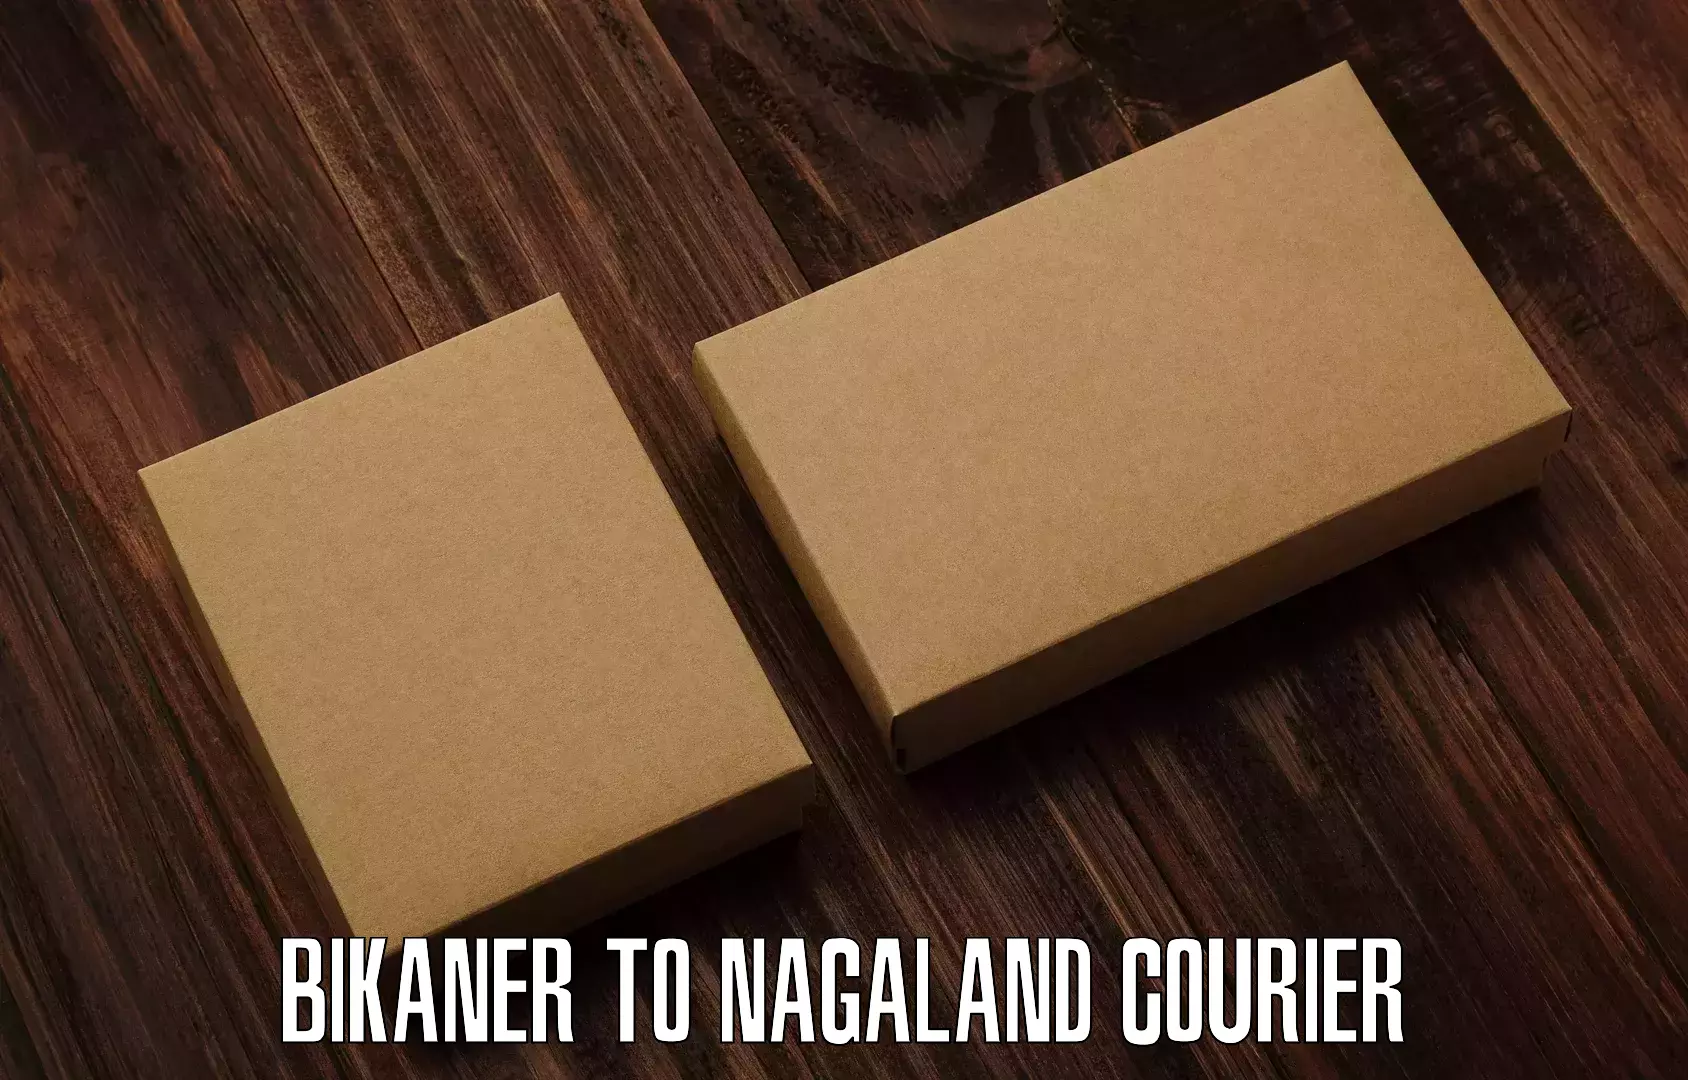 Individual parcel service Bikaner to NIT Nagaland